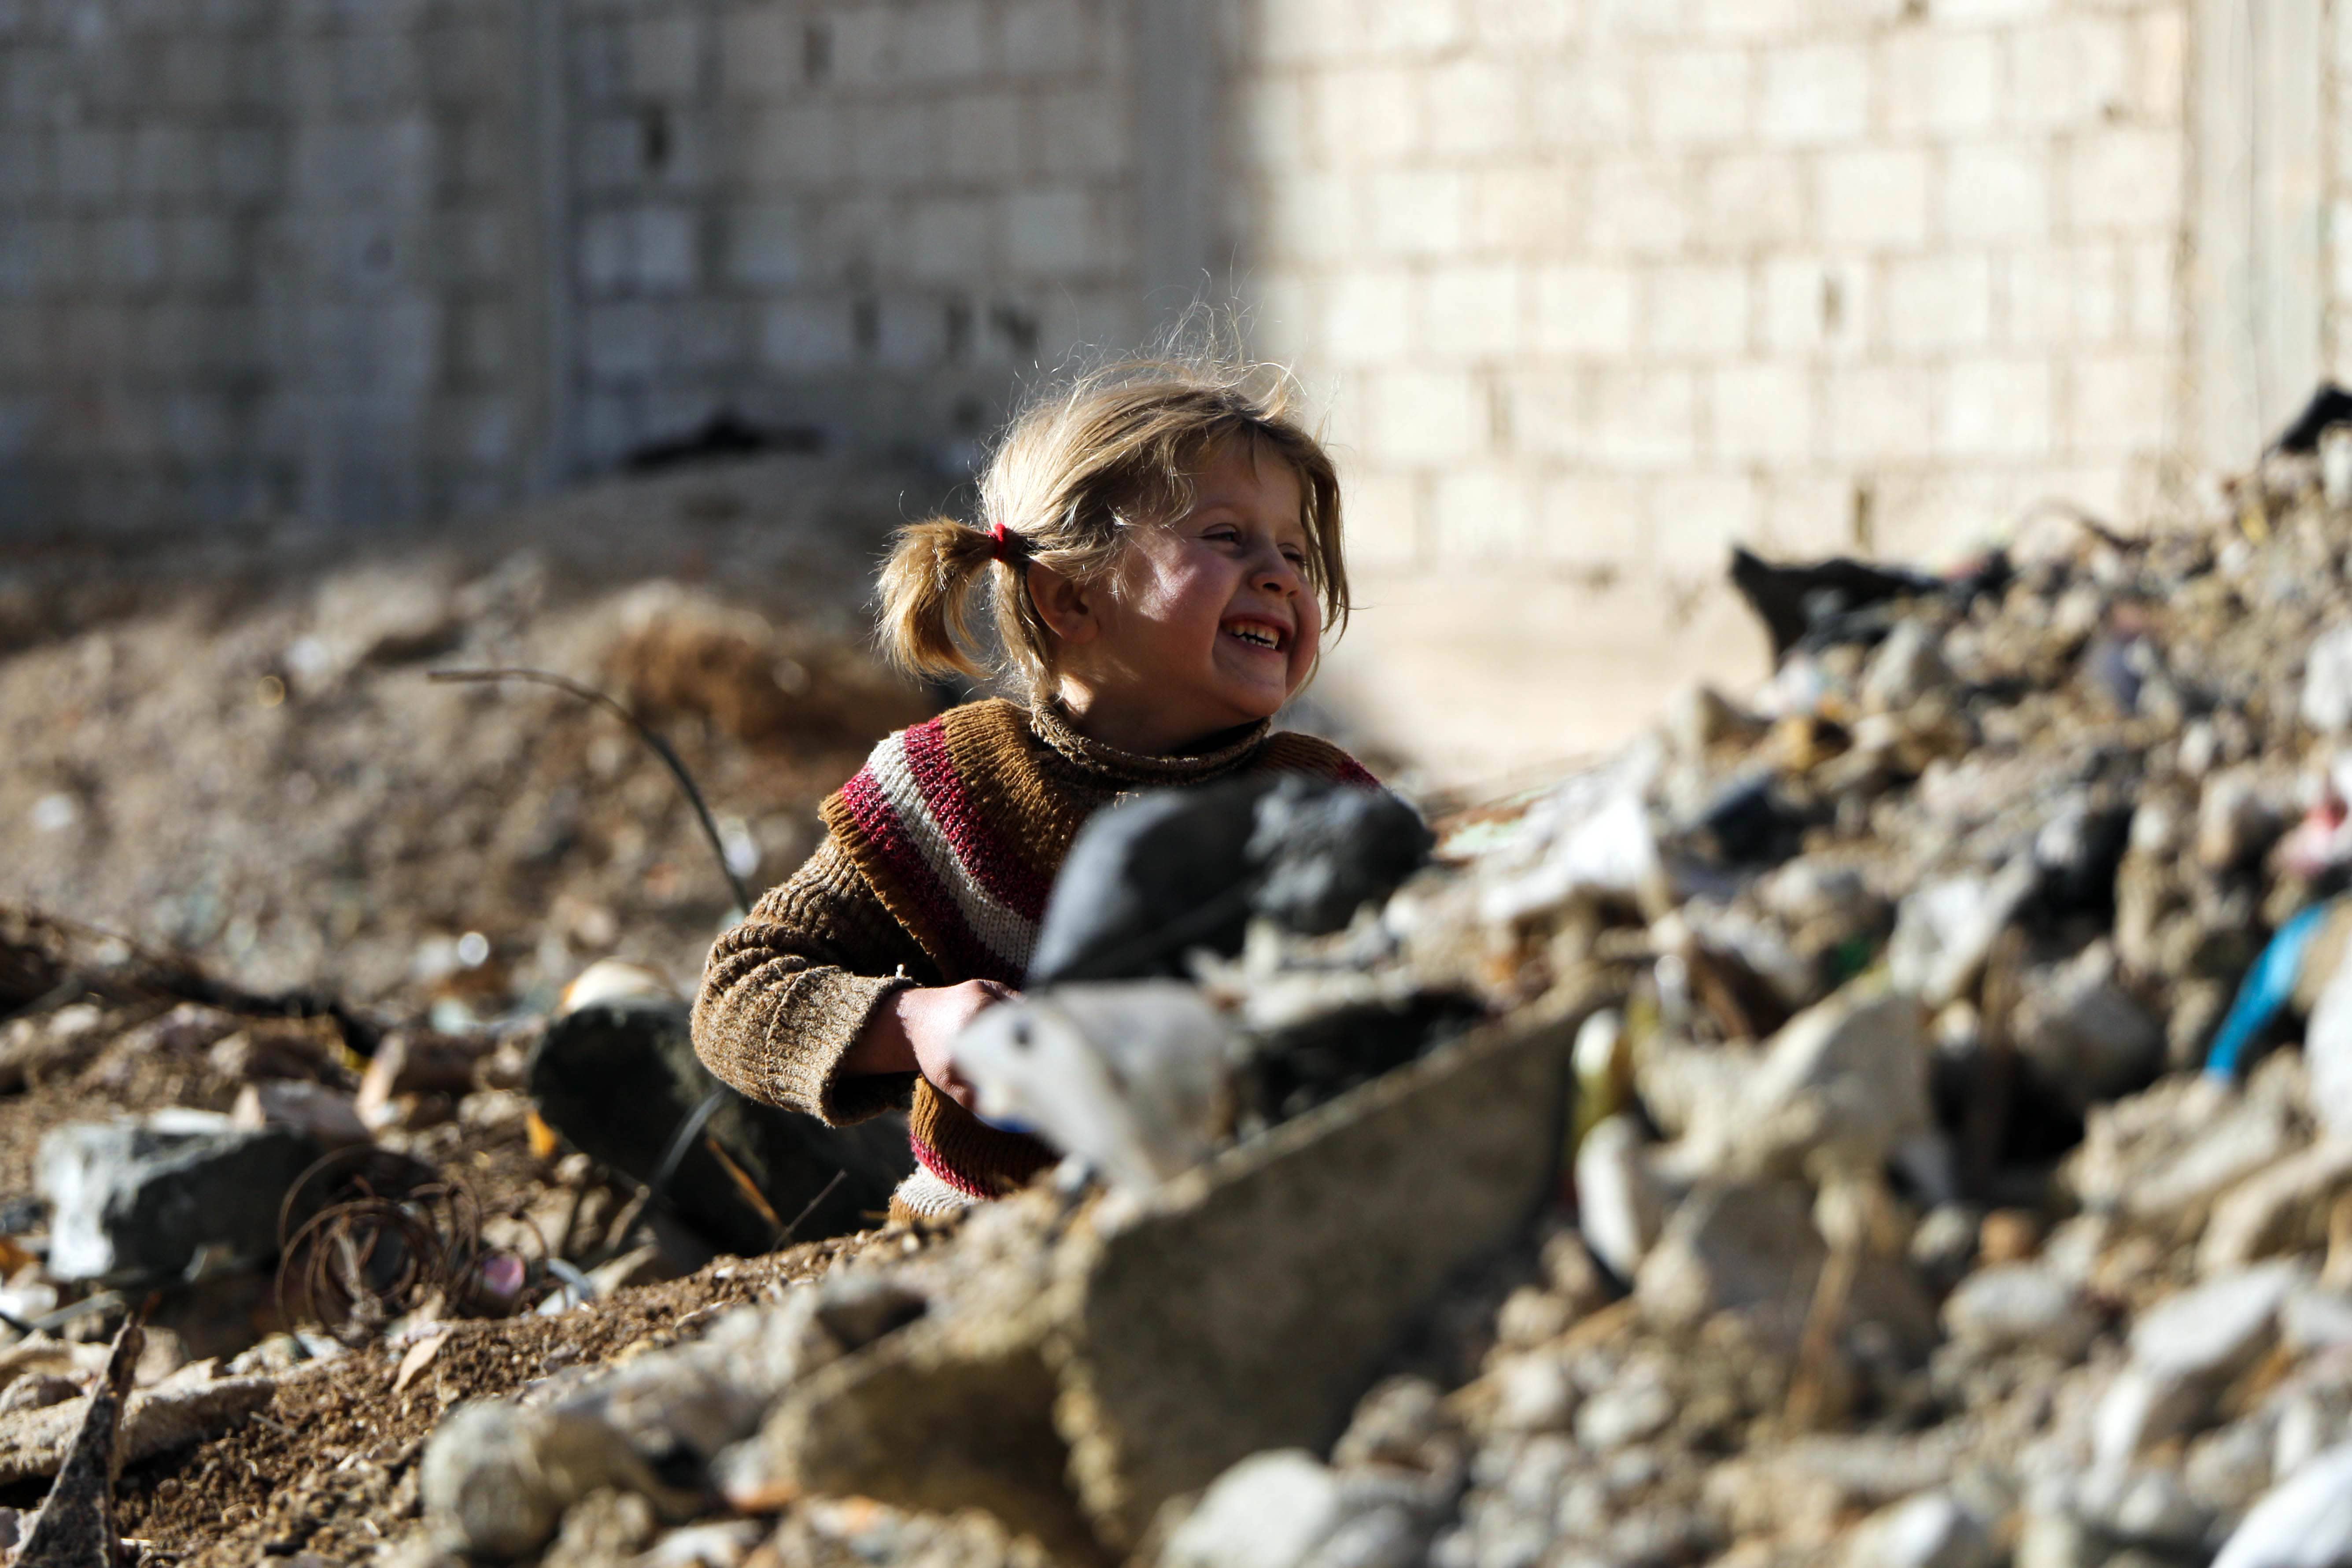 シリア危機6年 16年は子どもの被害が過去最大 ユニセフ 報告書発表